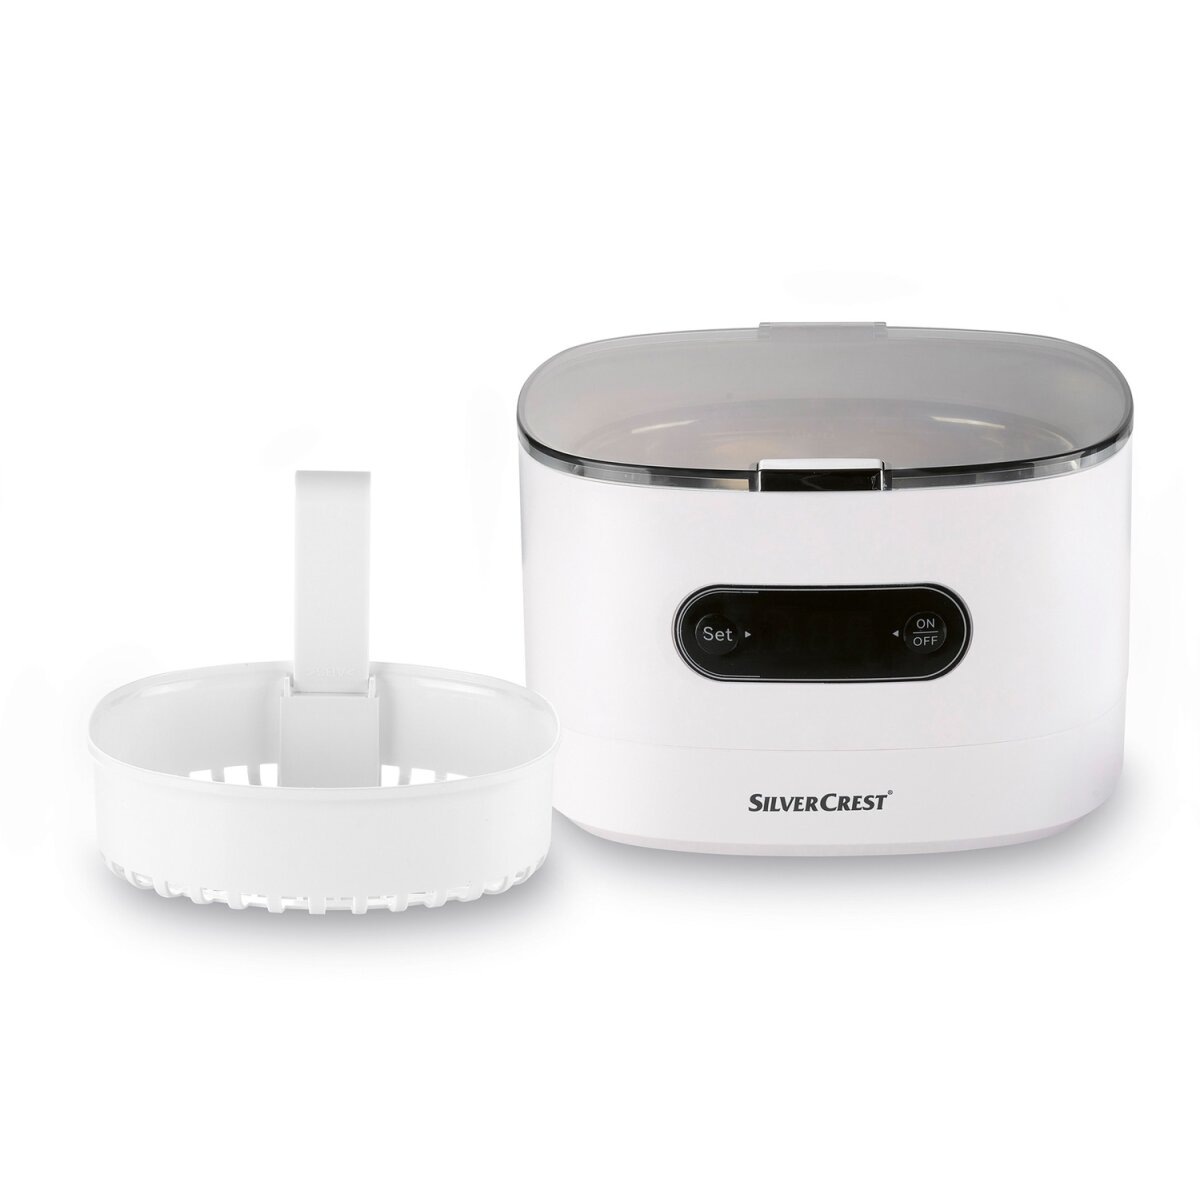 SILVERCREST® Ultraschall-Reinigungsgerät »SUR 48 D5«, weiß - B-Ware  neuwertig, 24,99 €